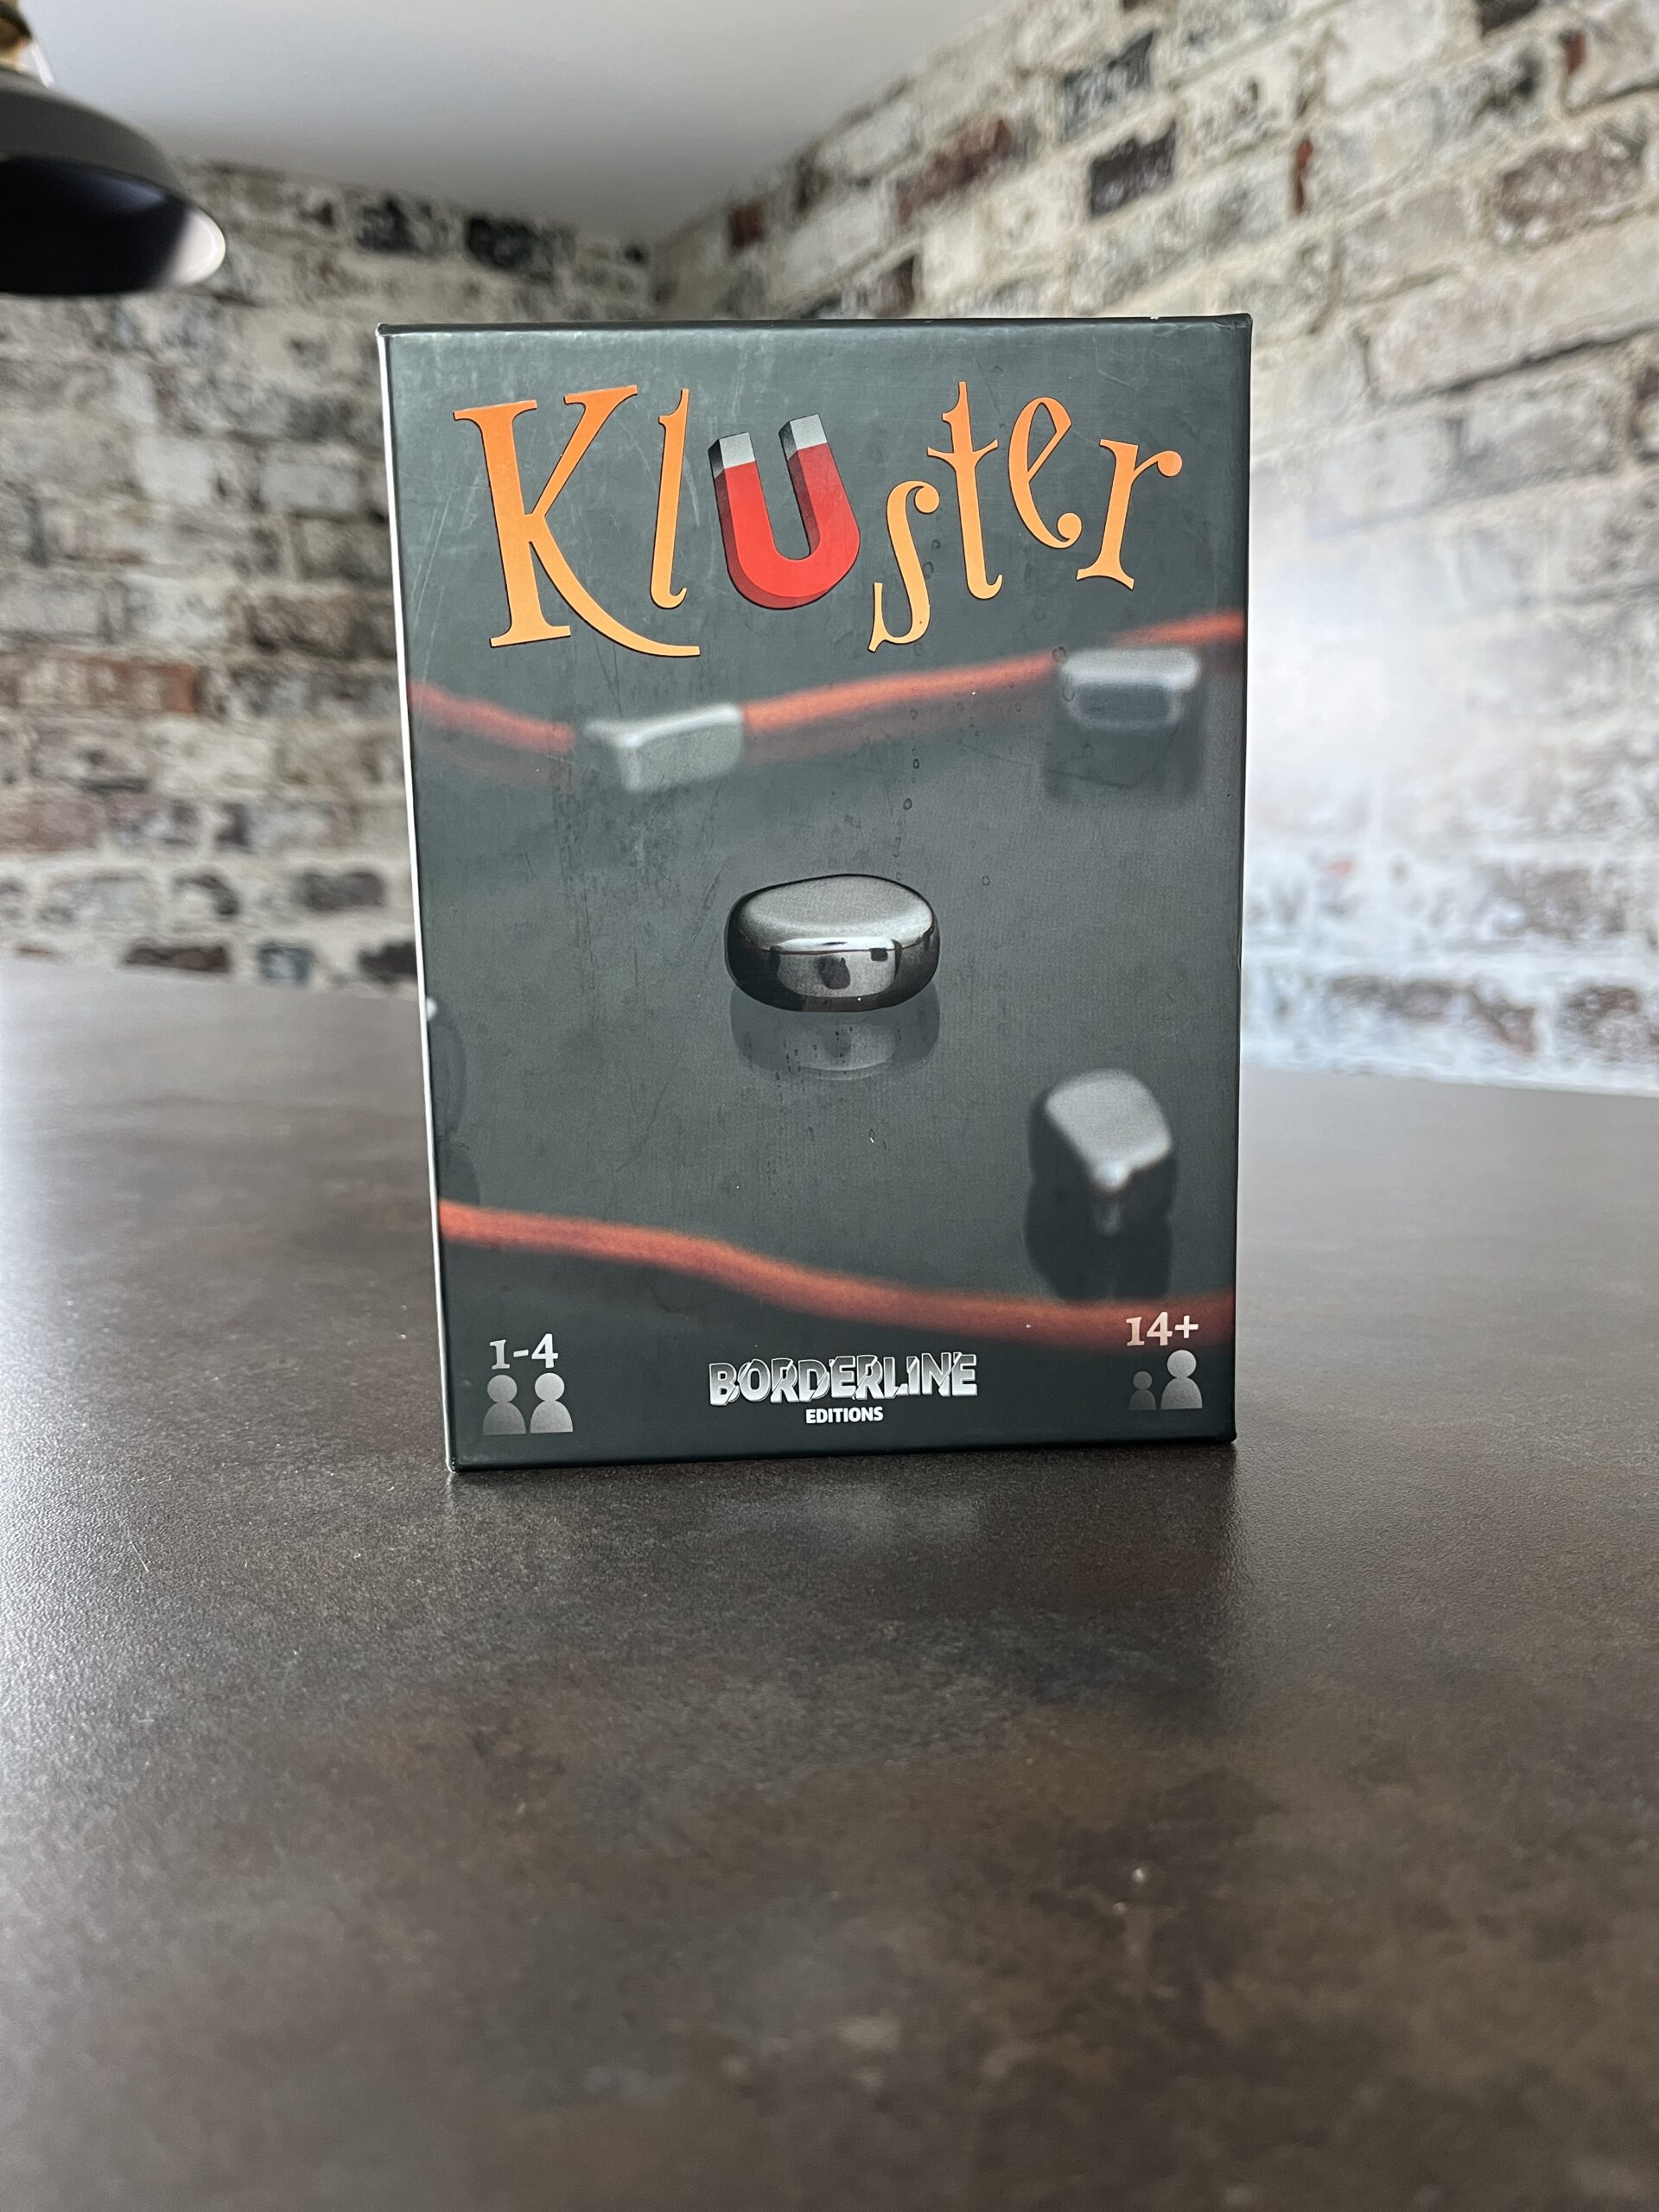 Kluster - un jeu d'aimant surprenant 